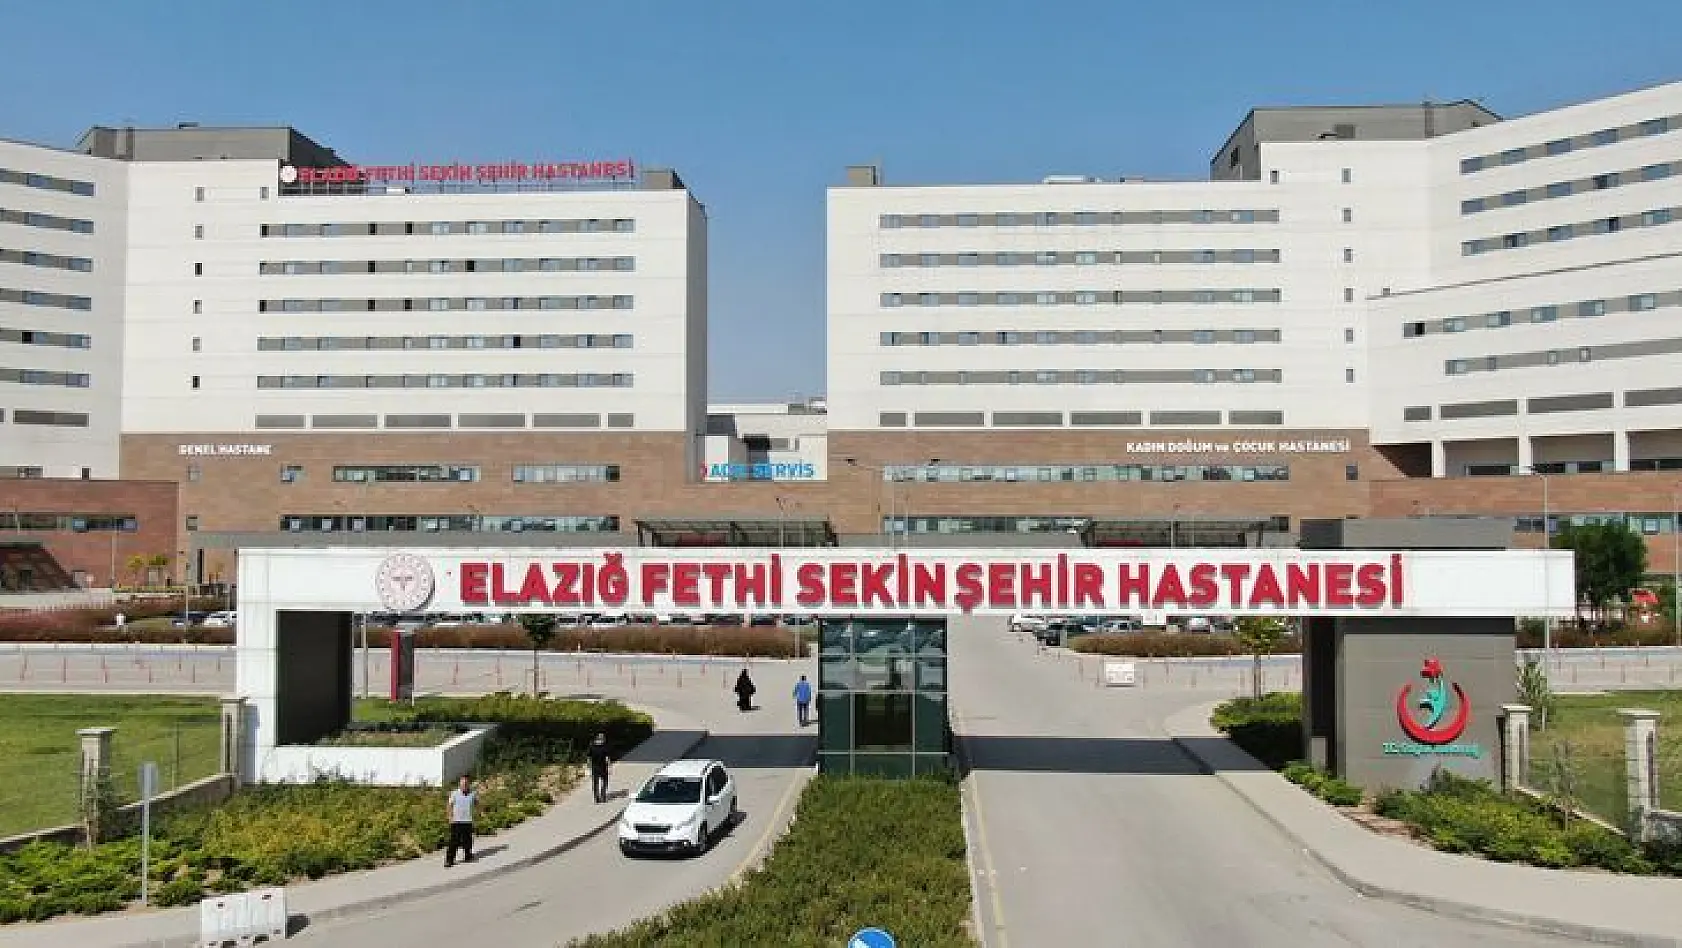 Covid-19 Hastası Sıfırlanan Fethi Sekin Şehir Hastanesi'nde, Poliklinik Hizmeti Başlıyor